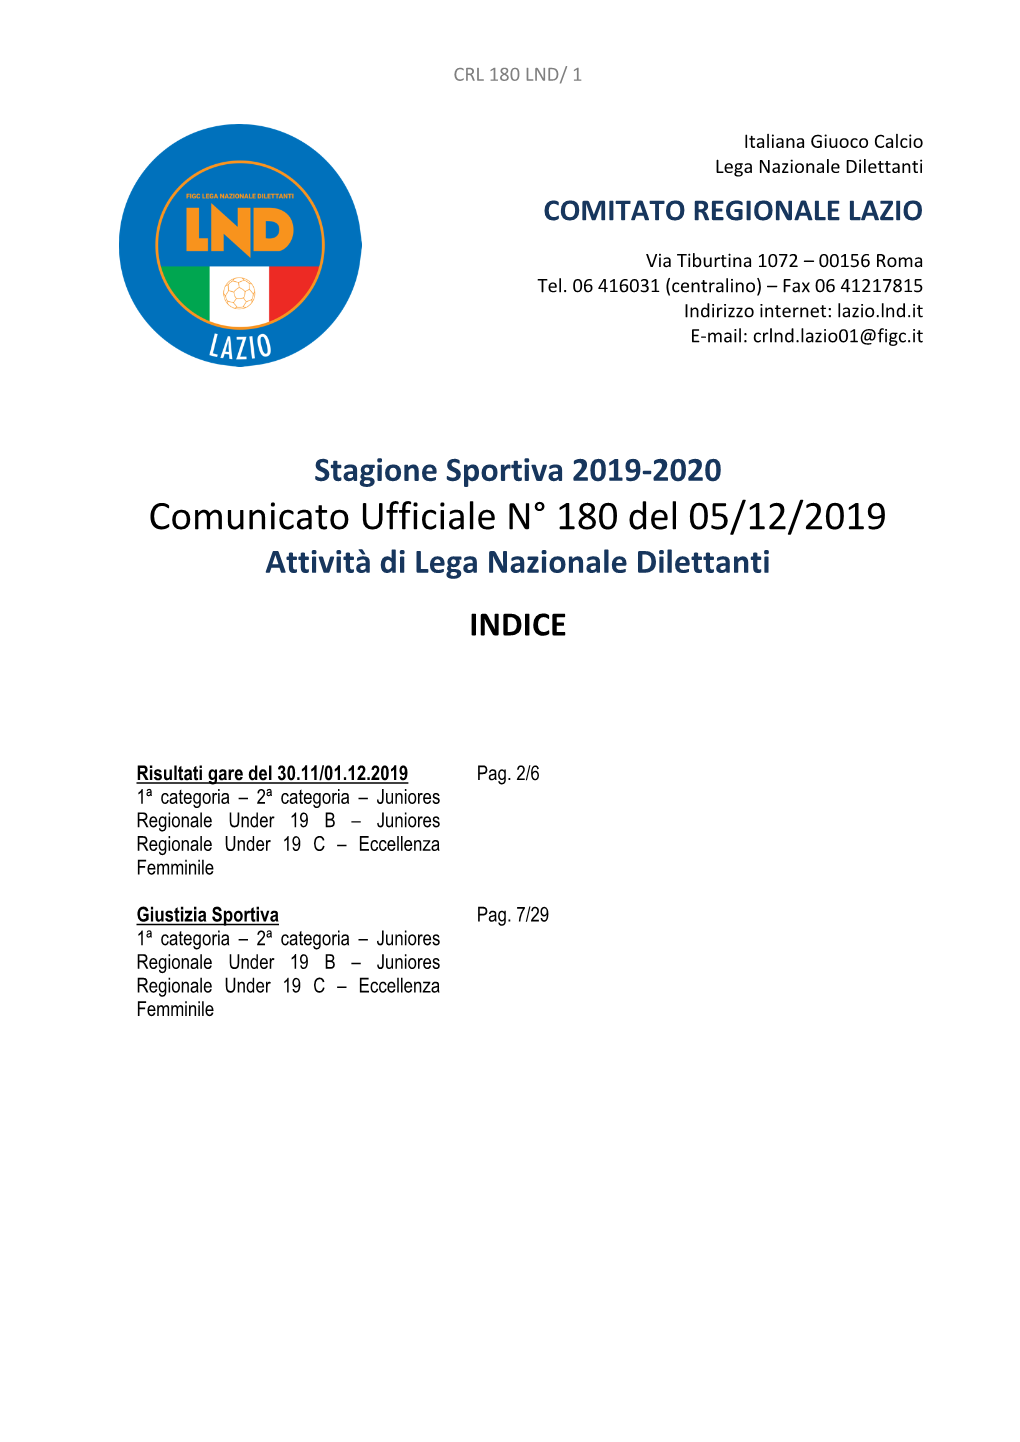 Comunicato Ufficiale N° 180 Del 05/12/2019 Attività Di Lega Nazionale Dilettanti INDICE